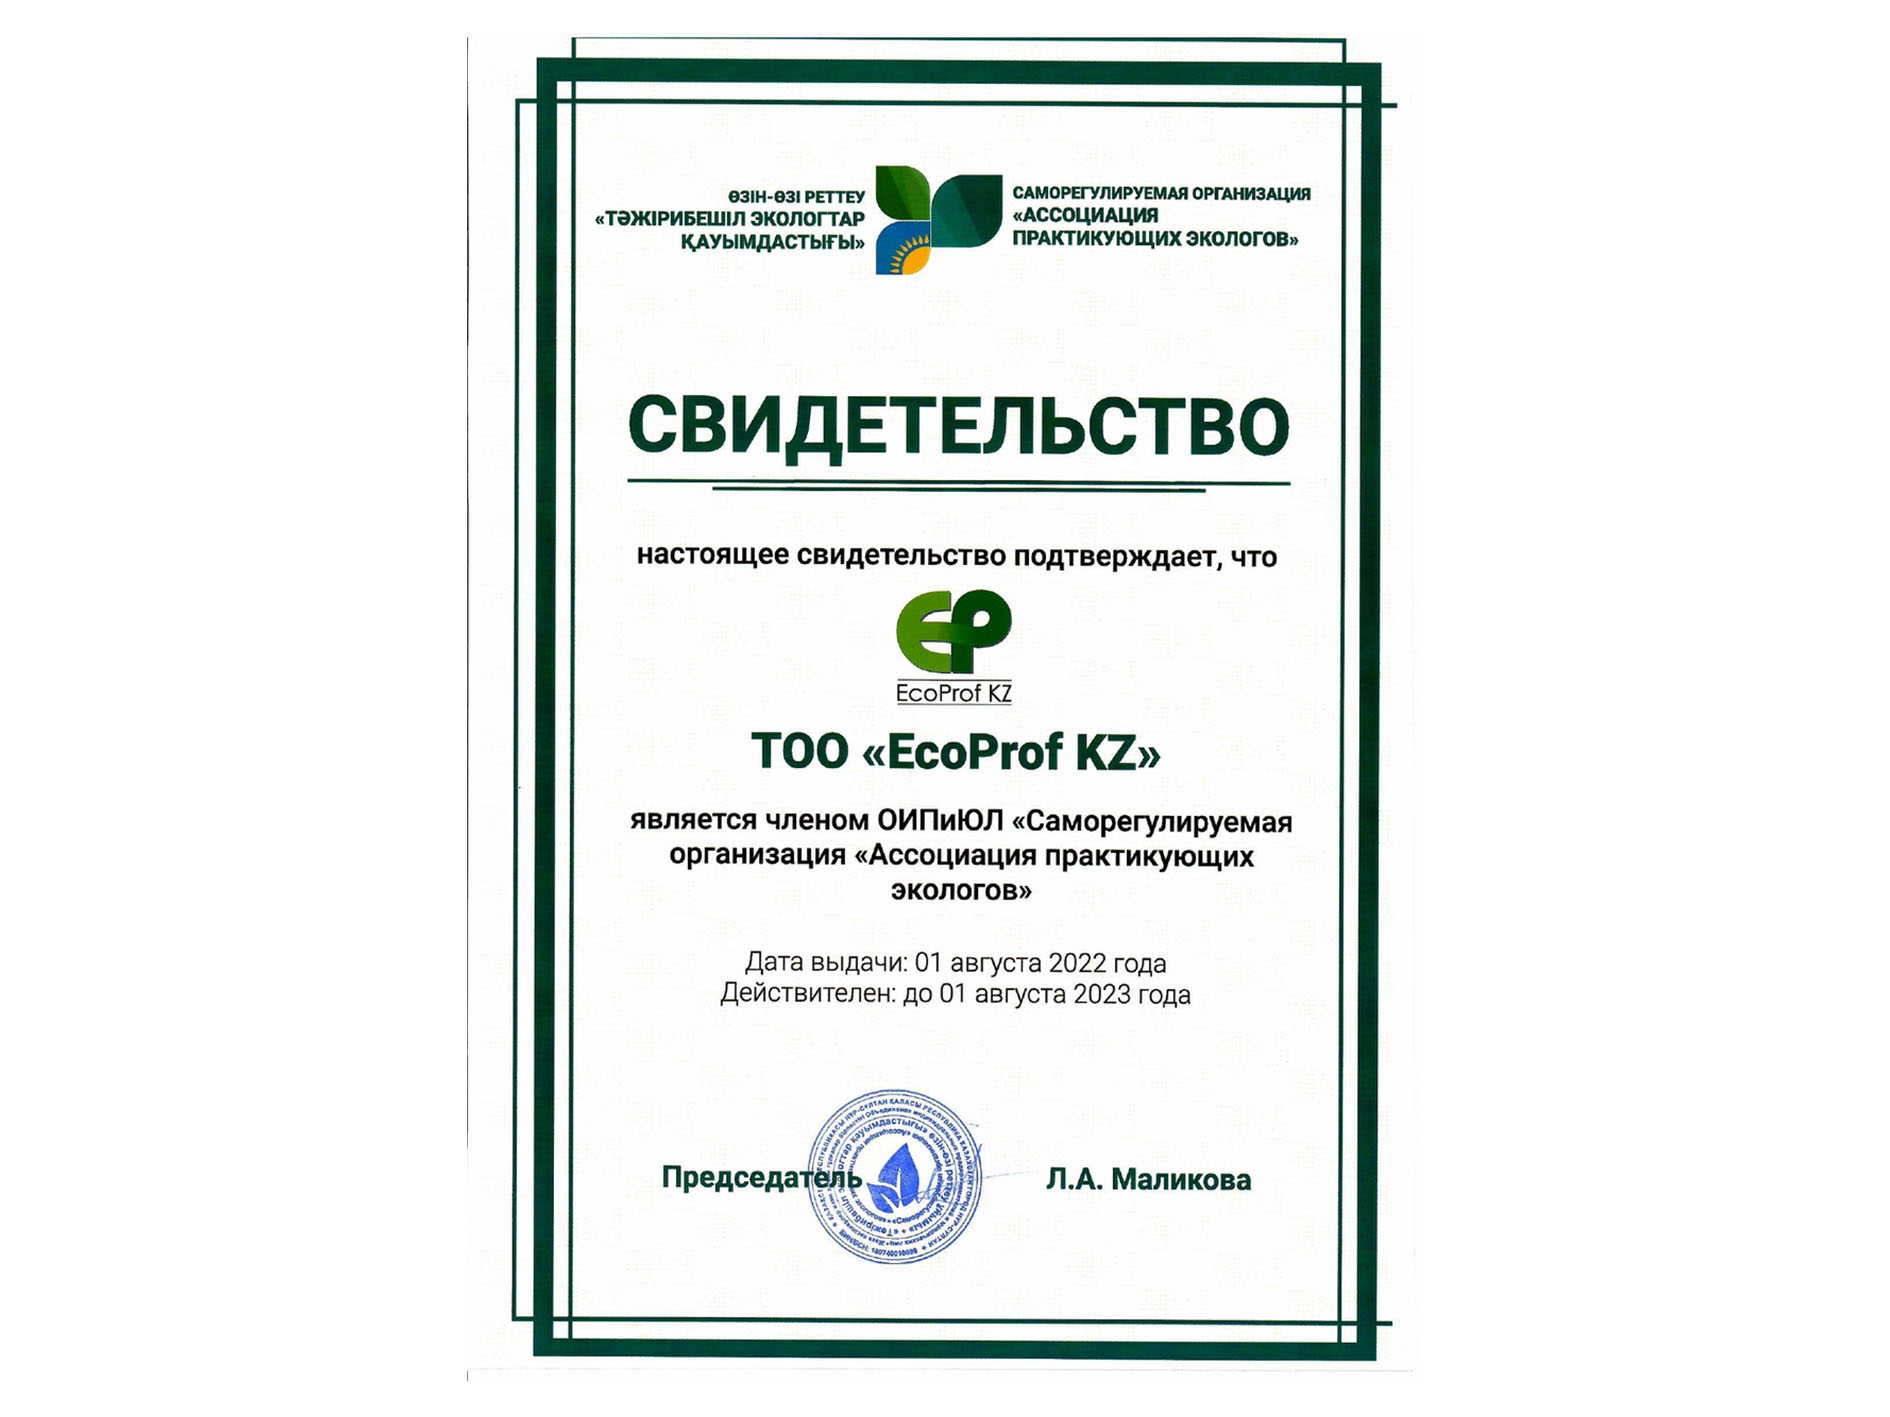 EcoProf KZ становится членом ОИПиЮЛ СРО «Ассоциация практикующих экологов»